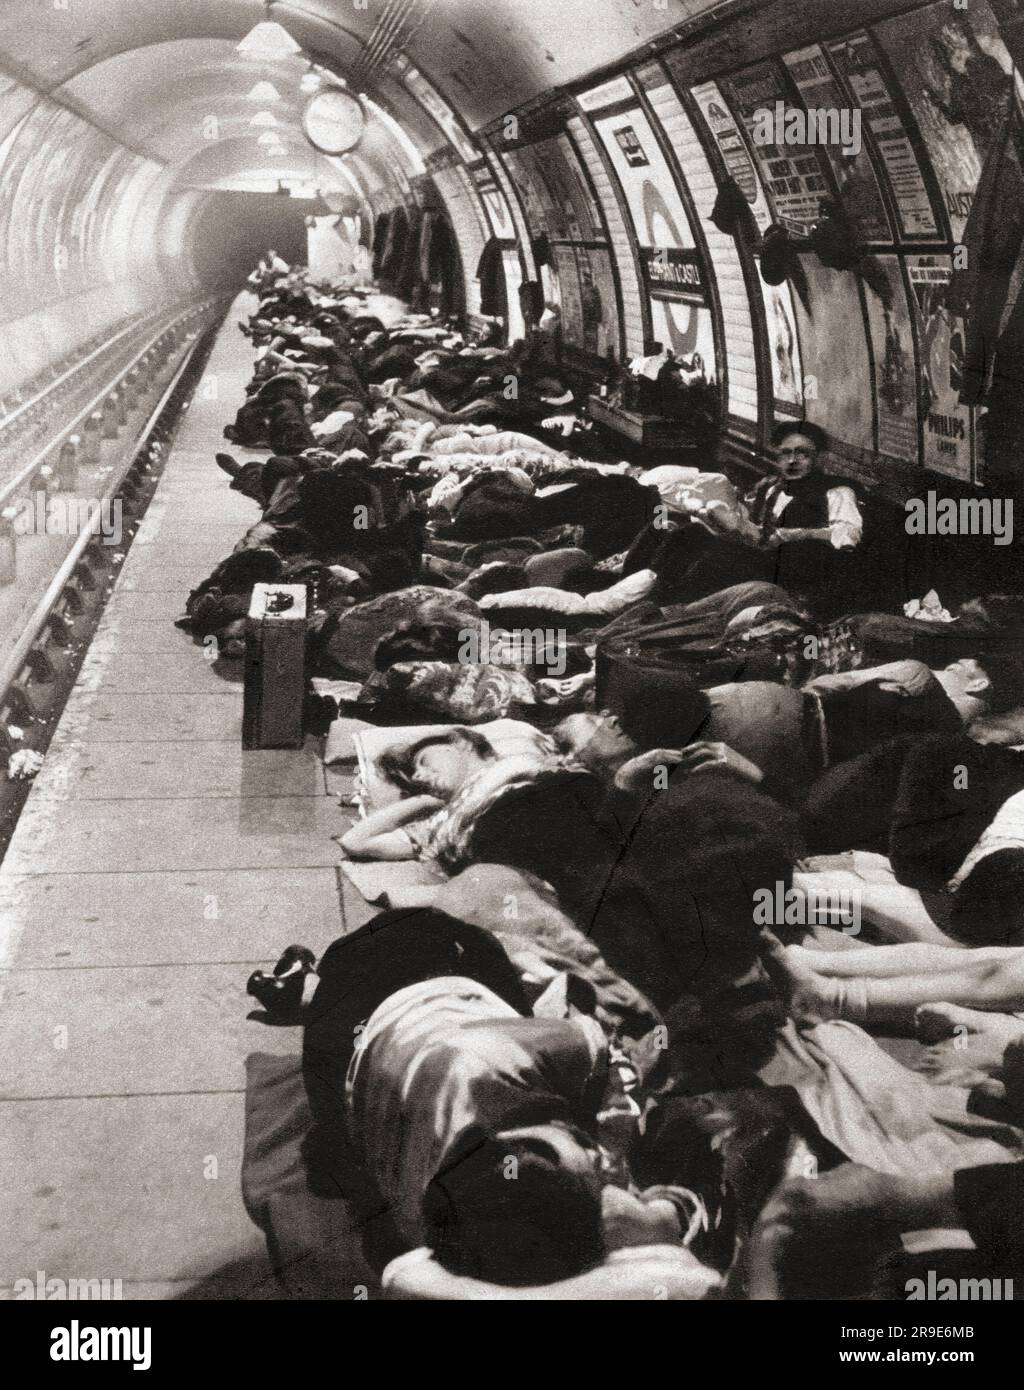 Civilains, die in der U-Bahn-Station Schutz vor den Bomben während des Zweiten Weltkriegs suchten, sahen hier die Elephant and Castle Station, London, England, 11. November 1940. Von Front Line 1940-41, veröffentlicht 1942 Stockfoto